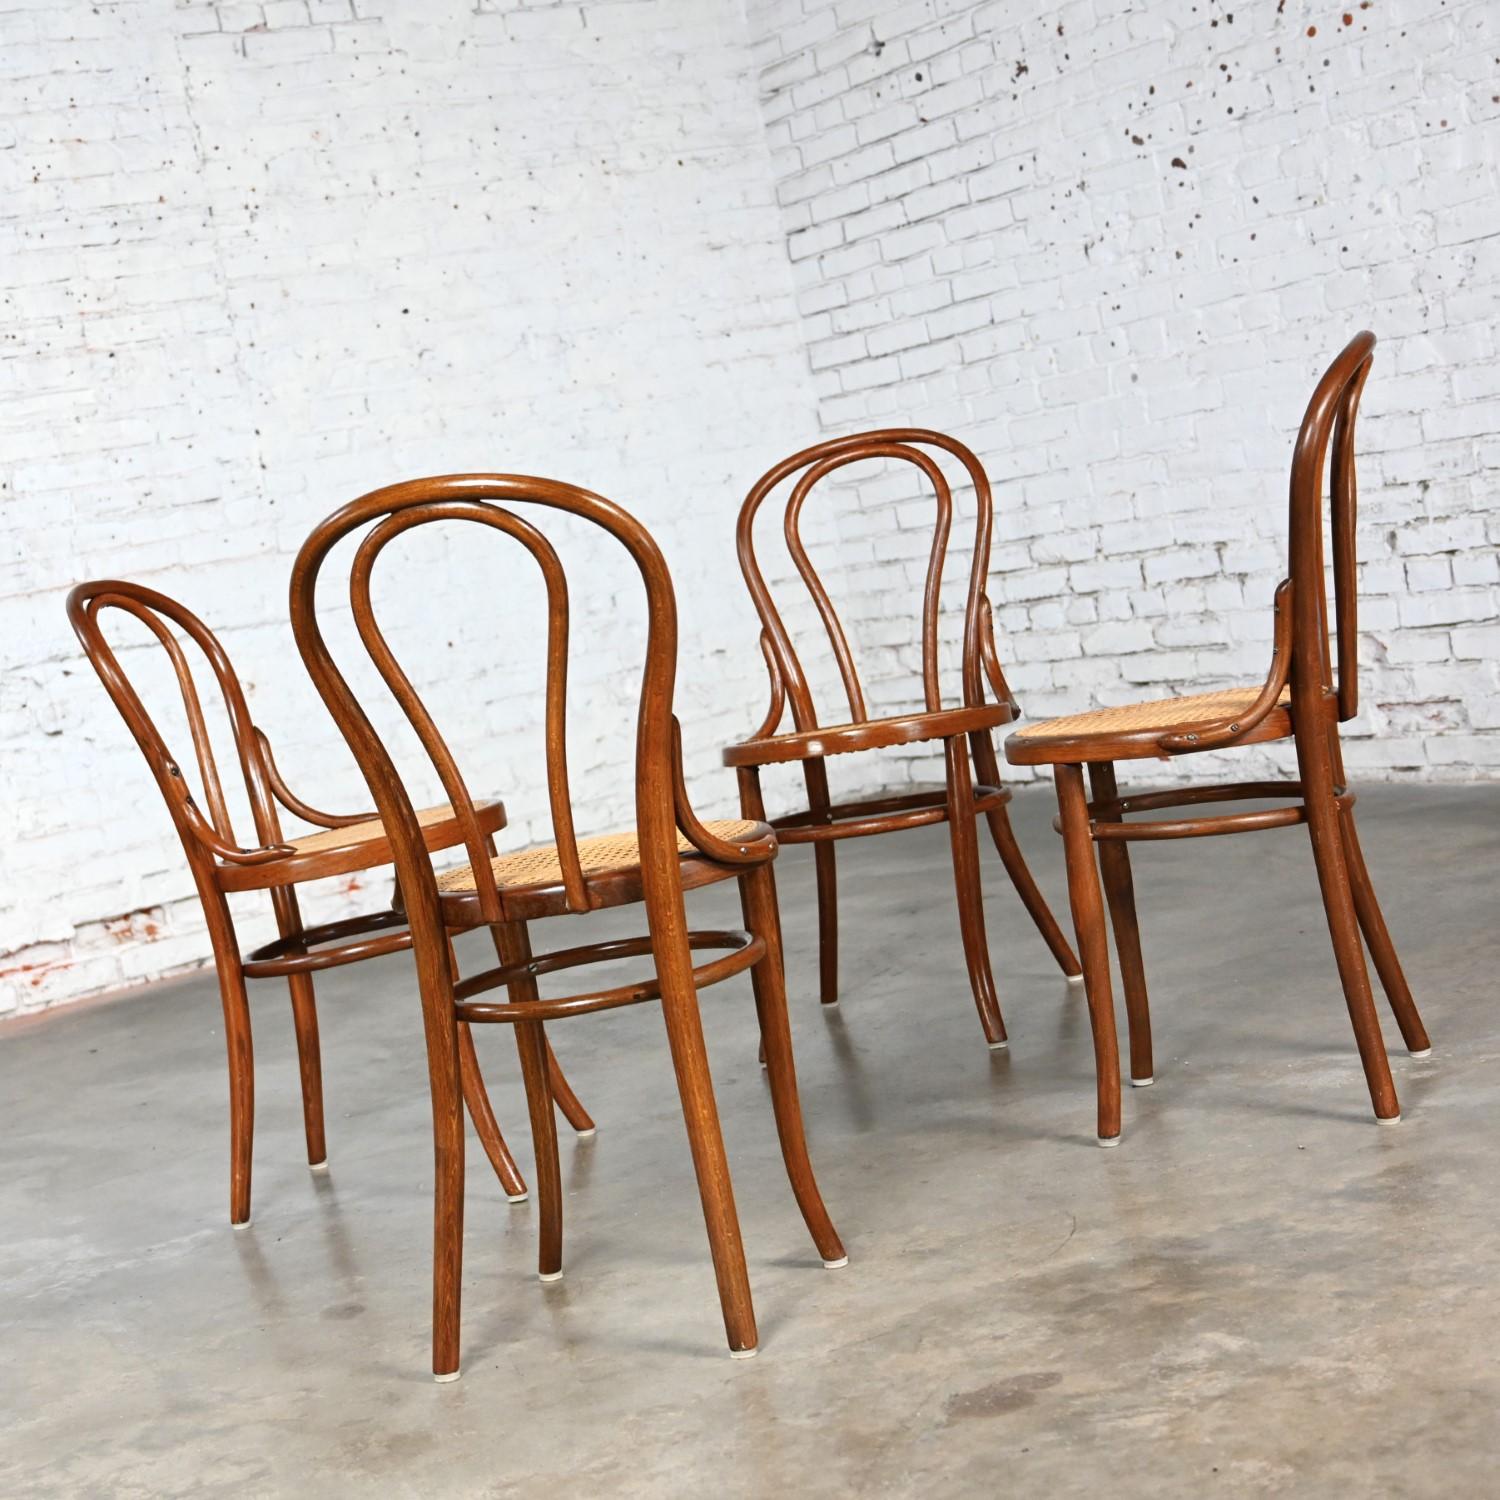 Fabuleuses chaises de café n° 18 de Thonet, de la fin du XIXe au début du XXe siècle, de style Bauhaus, composées d'une structure en bois courbé et d'une assise en cannage nouvellement fabriquée à la main. Byit, en gardant à l'esprit qu'il s'agit